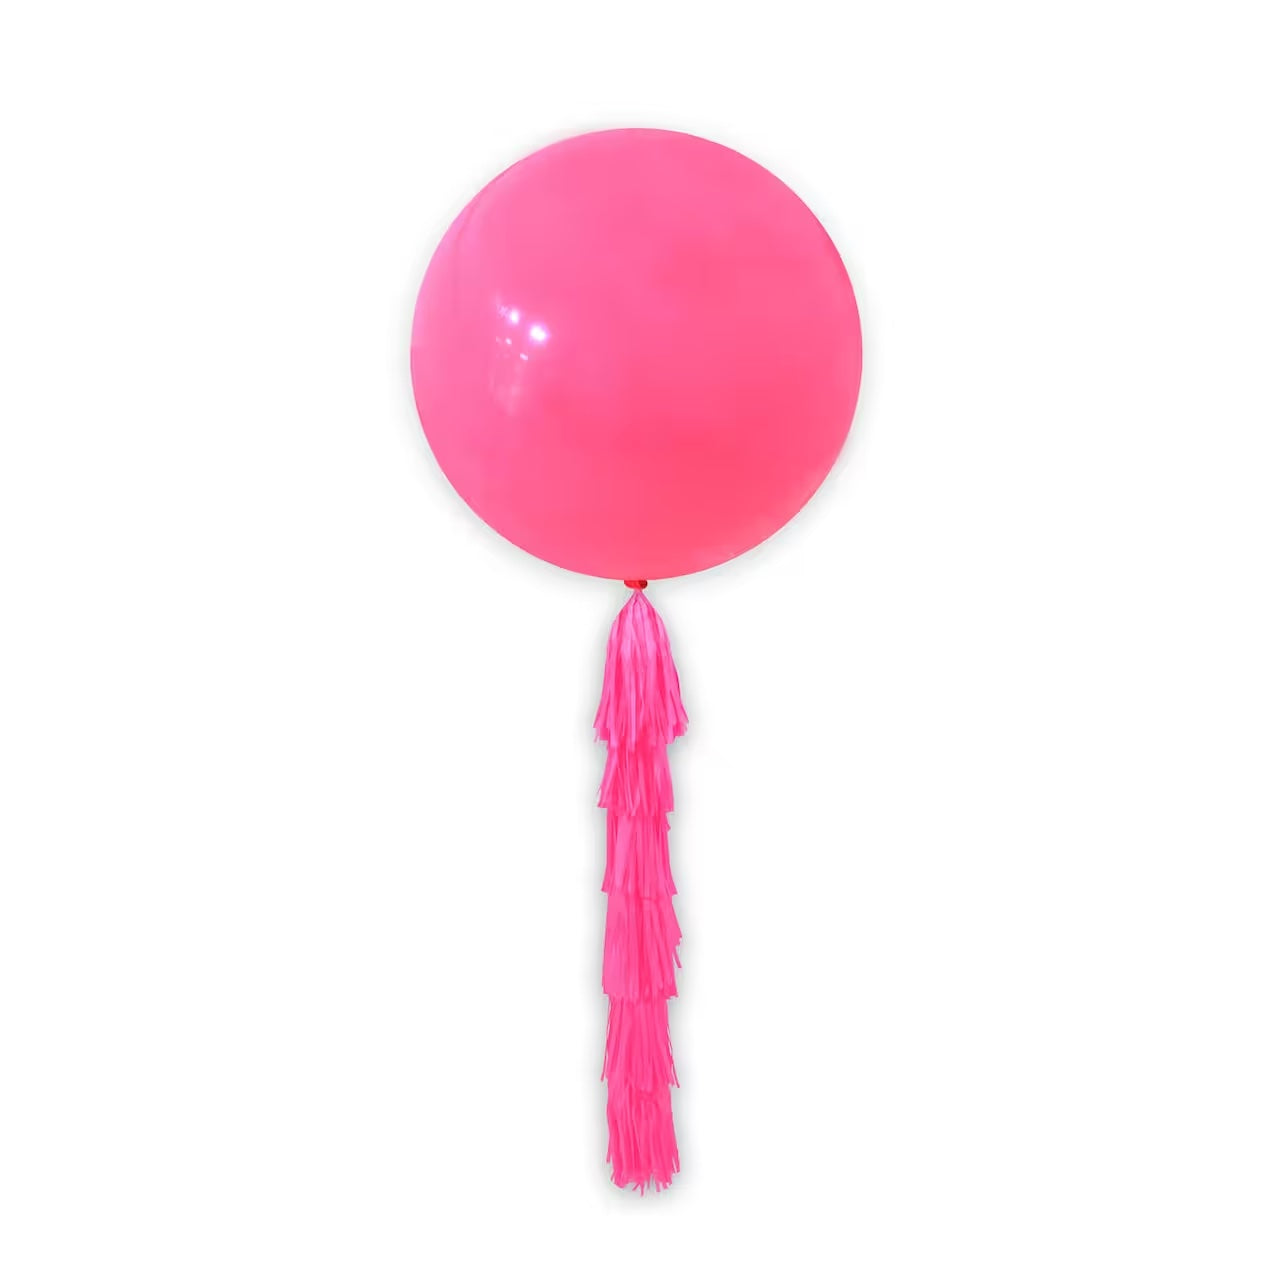 Jumbo 36 in. Dark Pink Balloon with Tassel